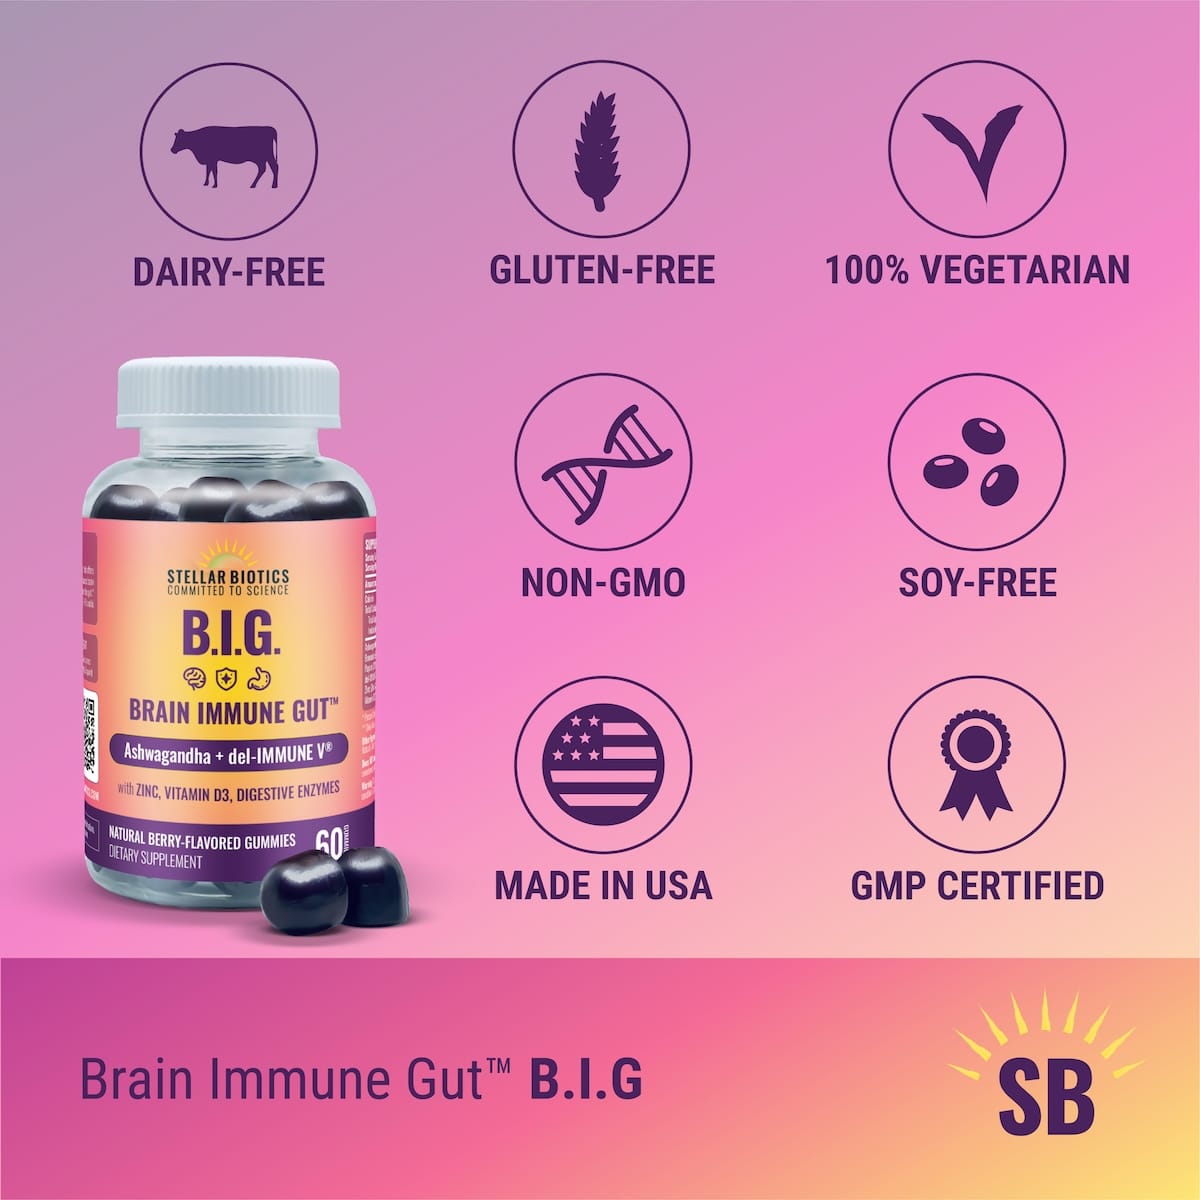 brain immune gut ashwagandha del immune v